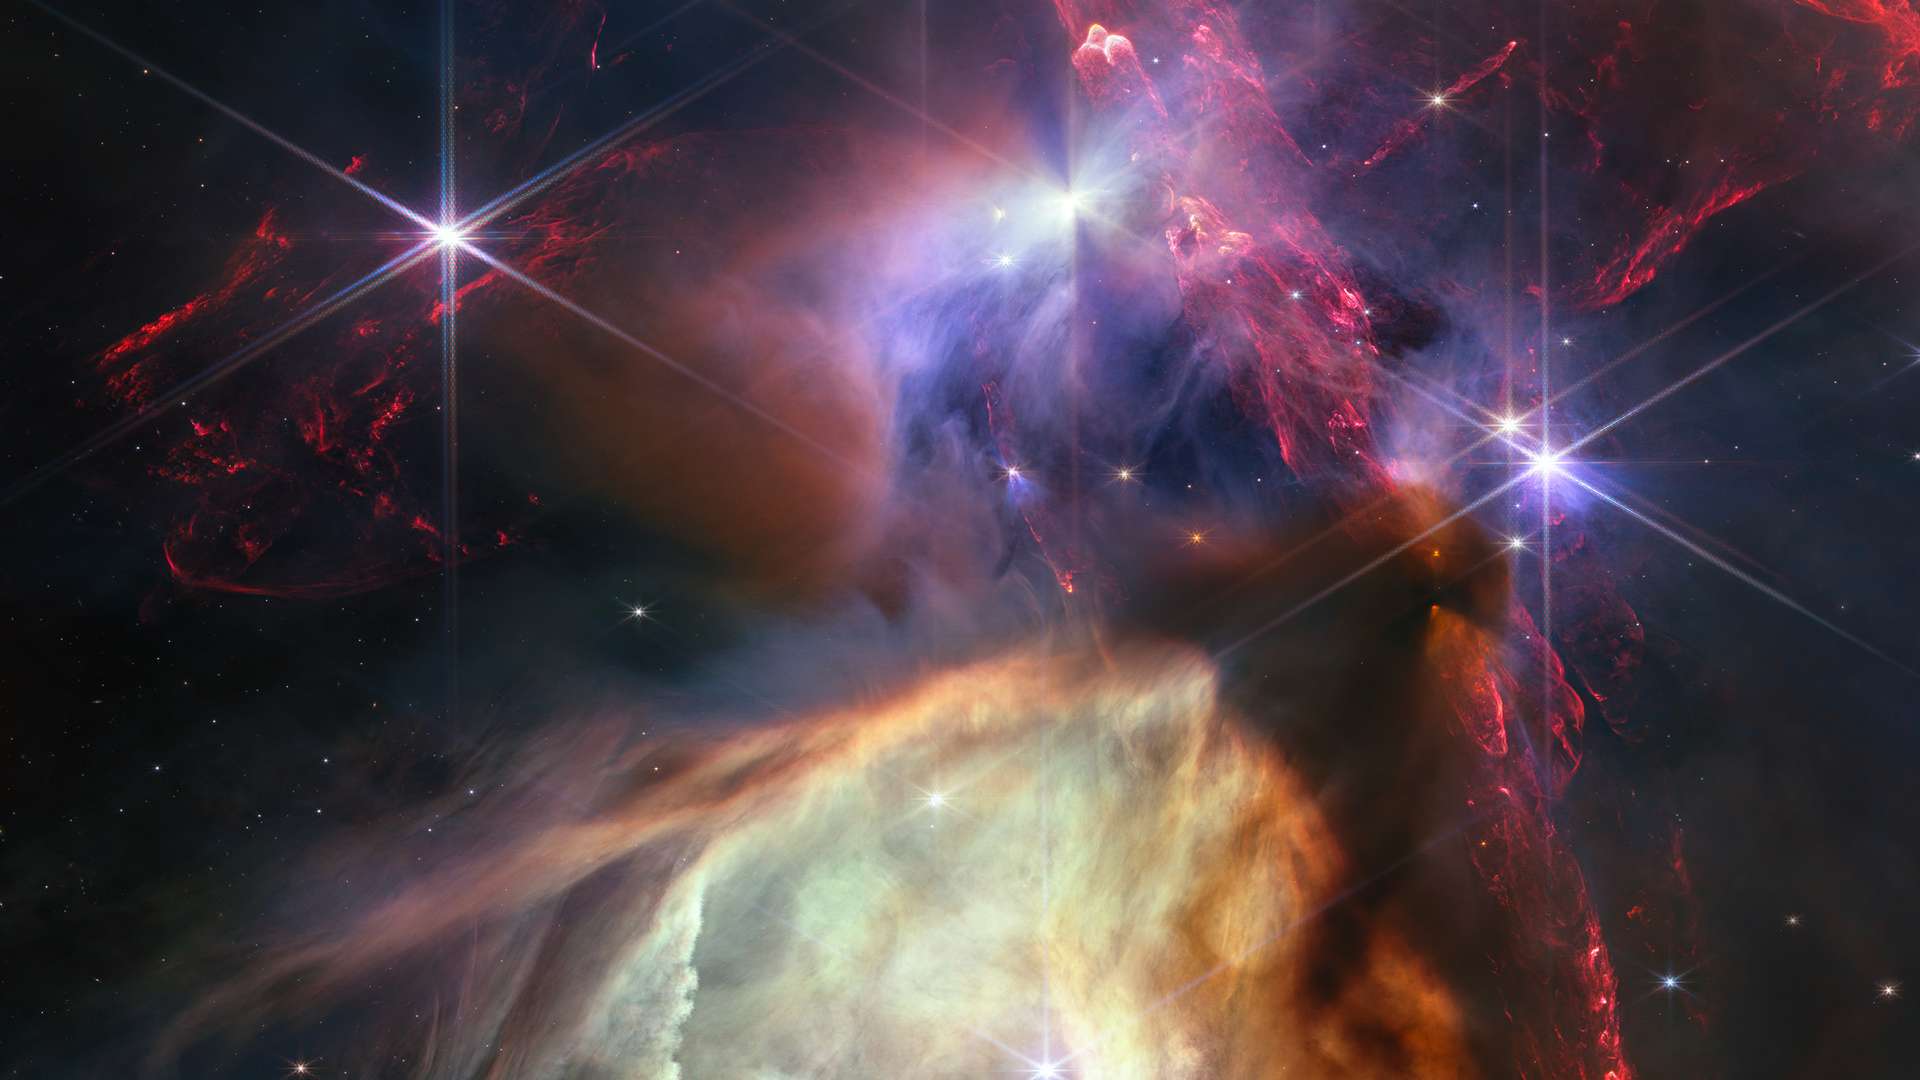 JWST celebra su primer año en el espacio con esta impresionante imagen de nuestro Universo